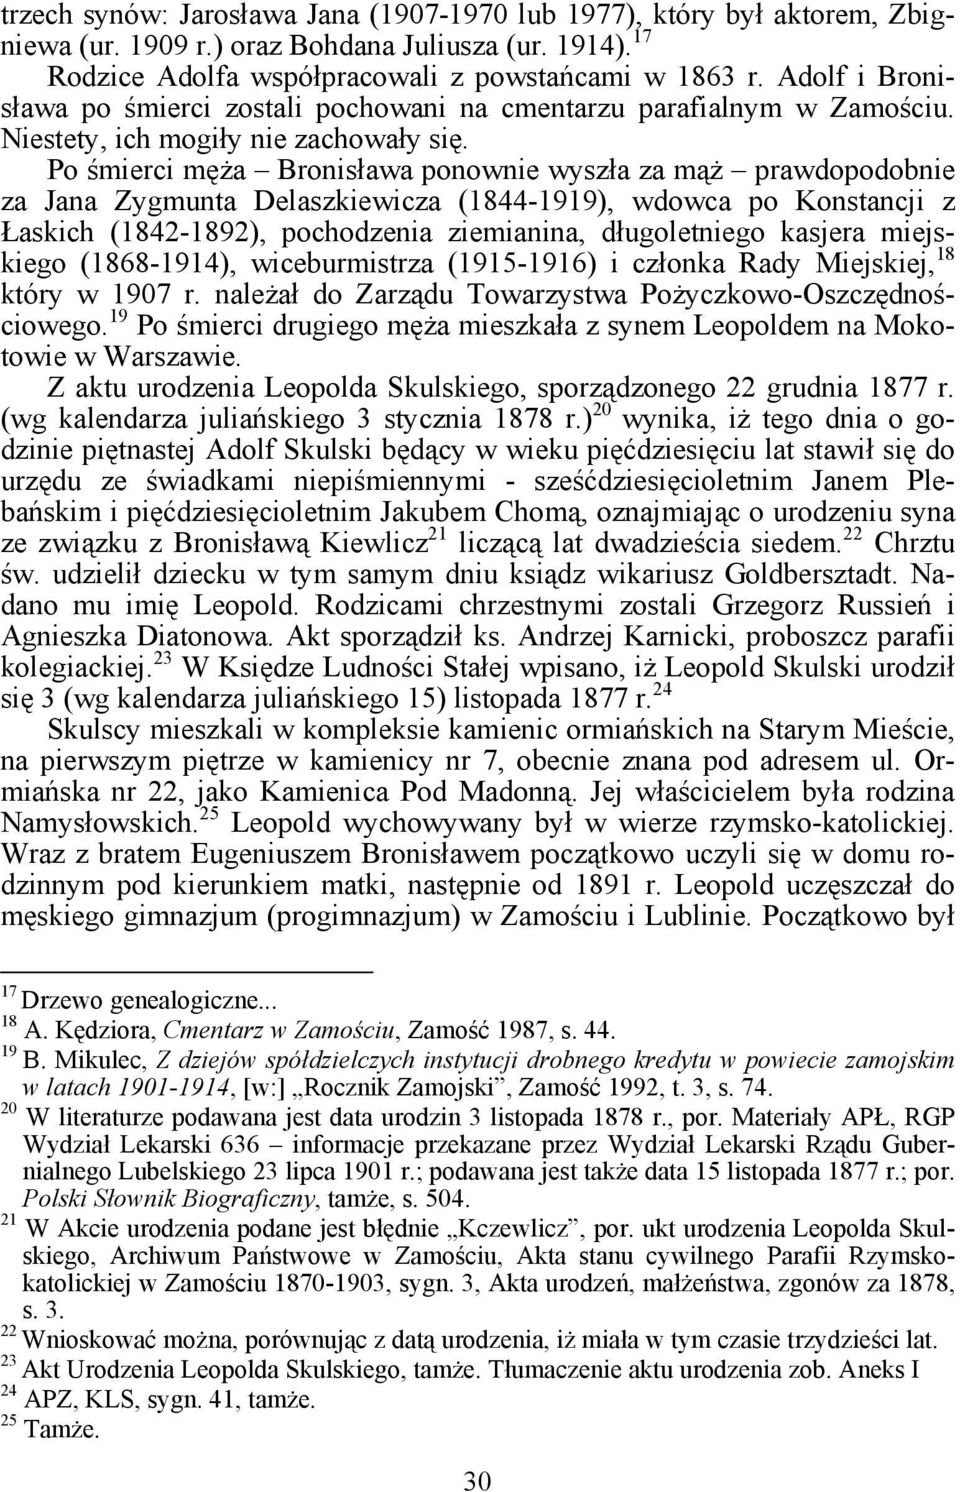 Po śmierci męża Bronisława ponownie wyszła za mąż prawdopodobnie za Jana Zygmunta Delaszkiewicza (1844-1919), wdowca po Konstancji z Łaskich (1842-1892), pochodzenia ziemianina, długoletniego kasjera